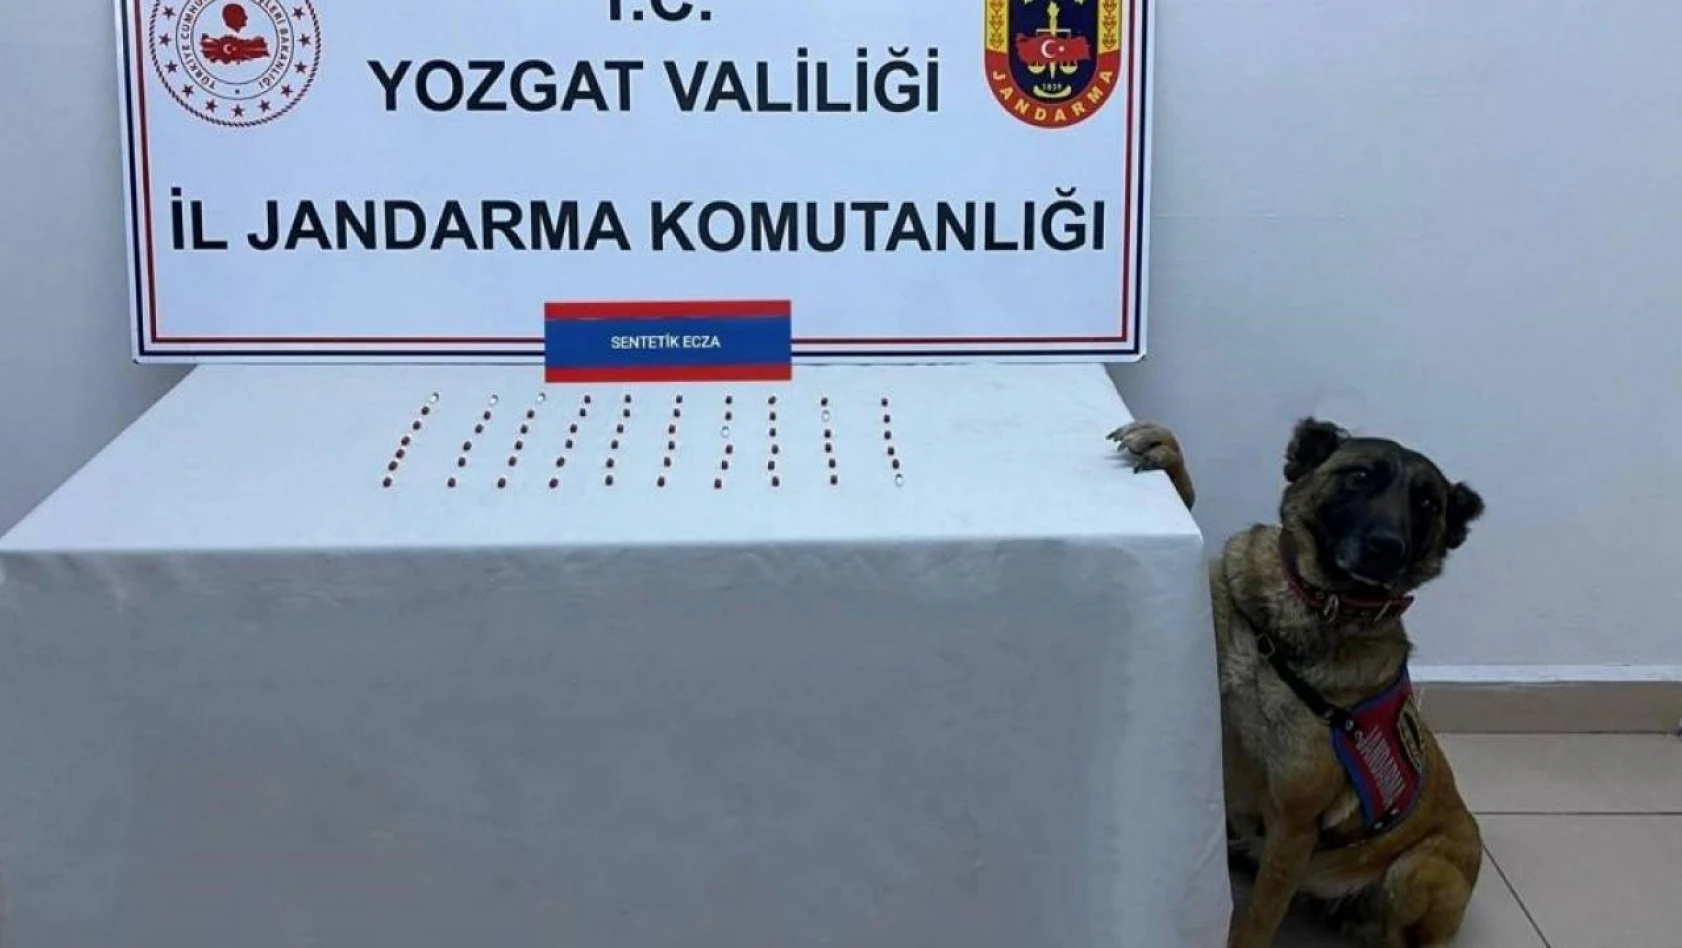 Yozgat'ta uyuşturucu tacirlerine darbe